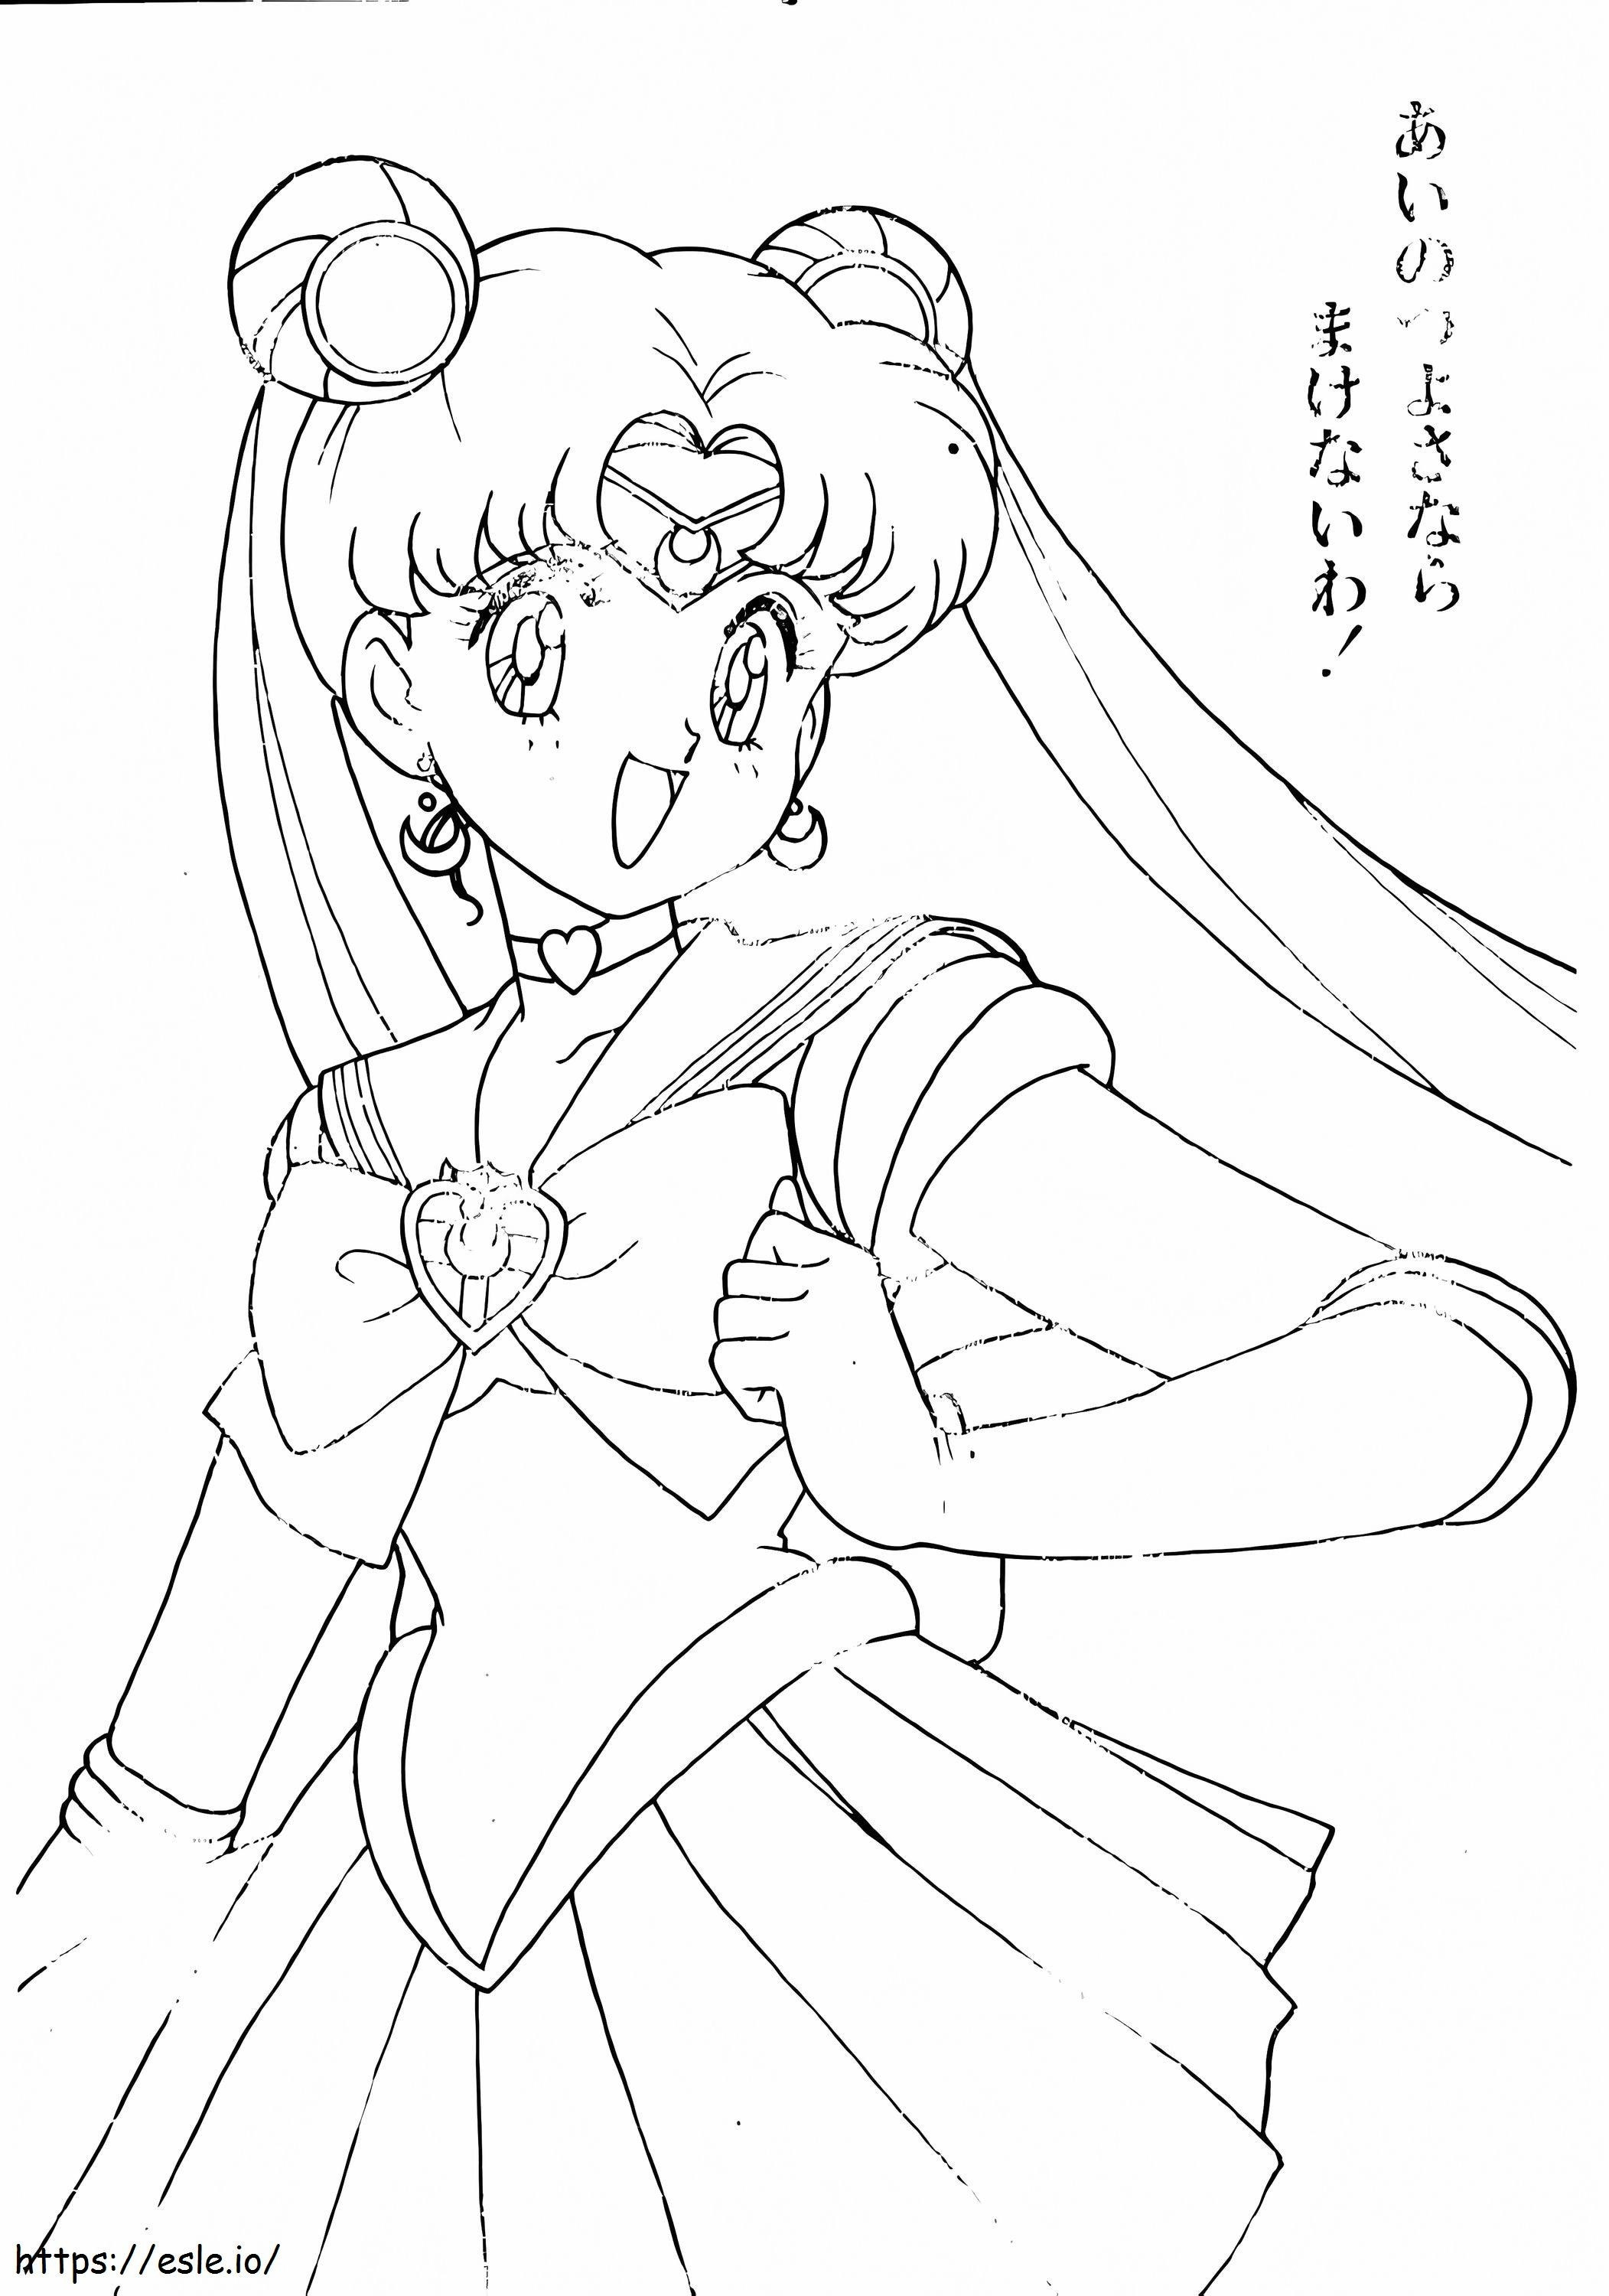 Usagi Tsukino From Sailor Moon coloring page